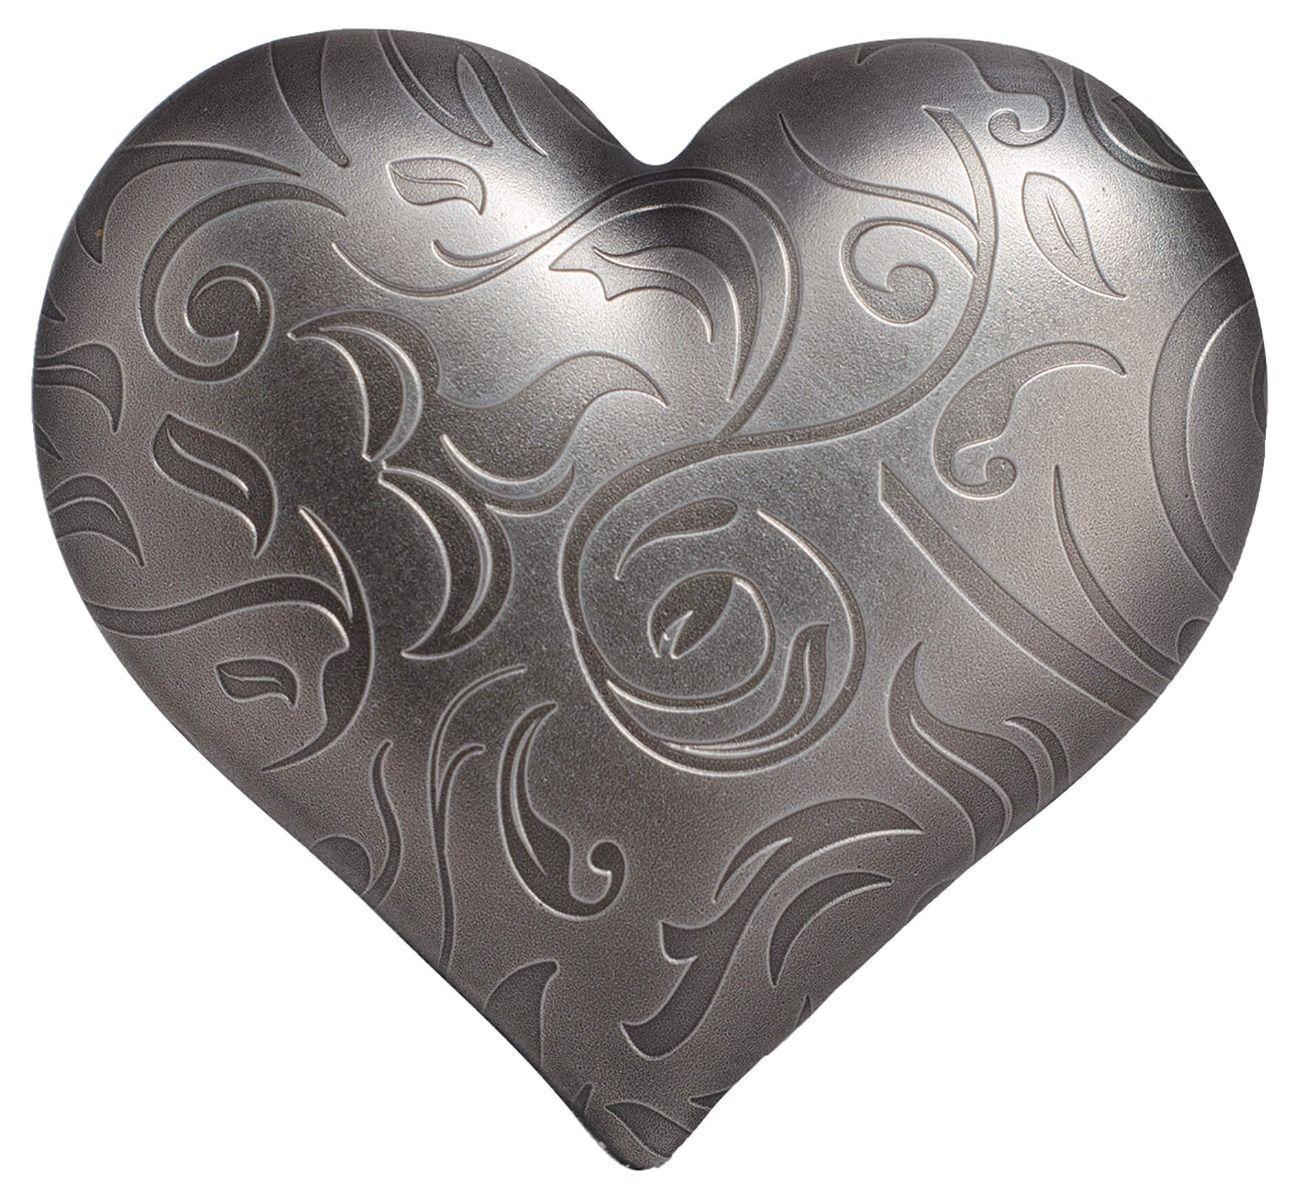 2018 $5 Silver Heart Coin 1oz Silver Antique